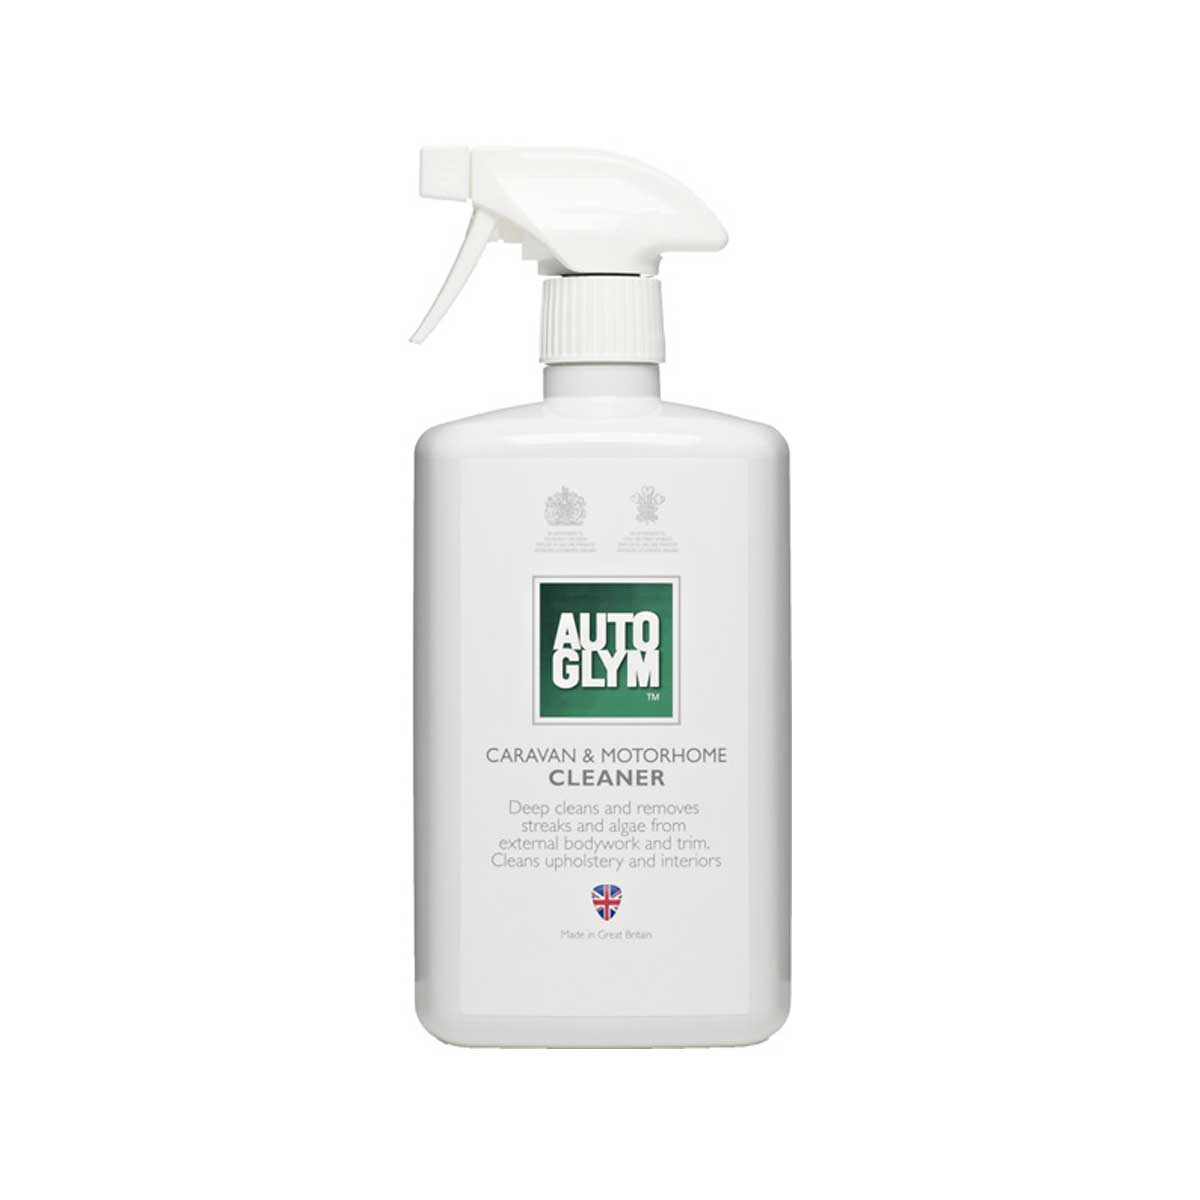 Förtvättsmedel (lösningsbaserat) Autoglym Caravan & Motorhome Cleaner, 1000 ml